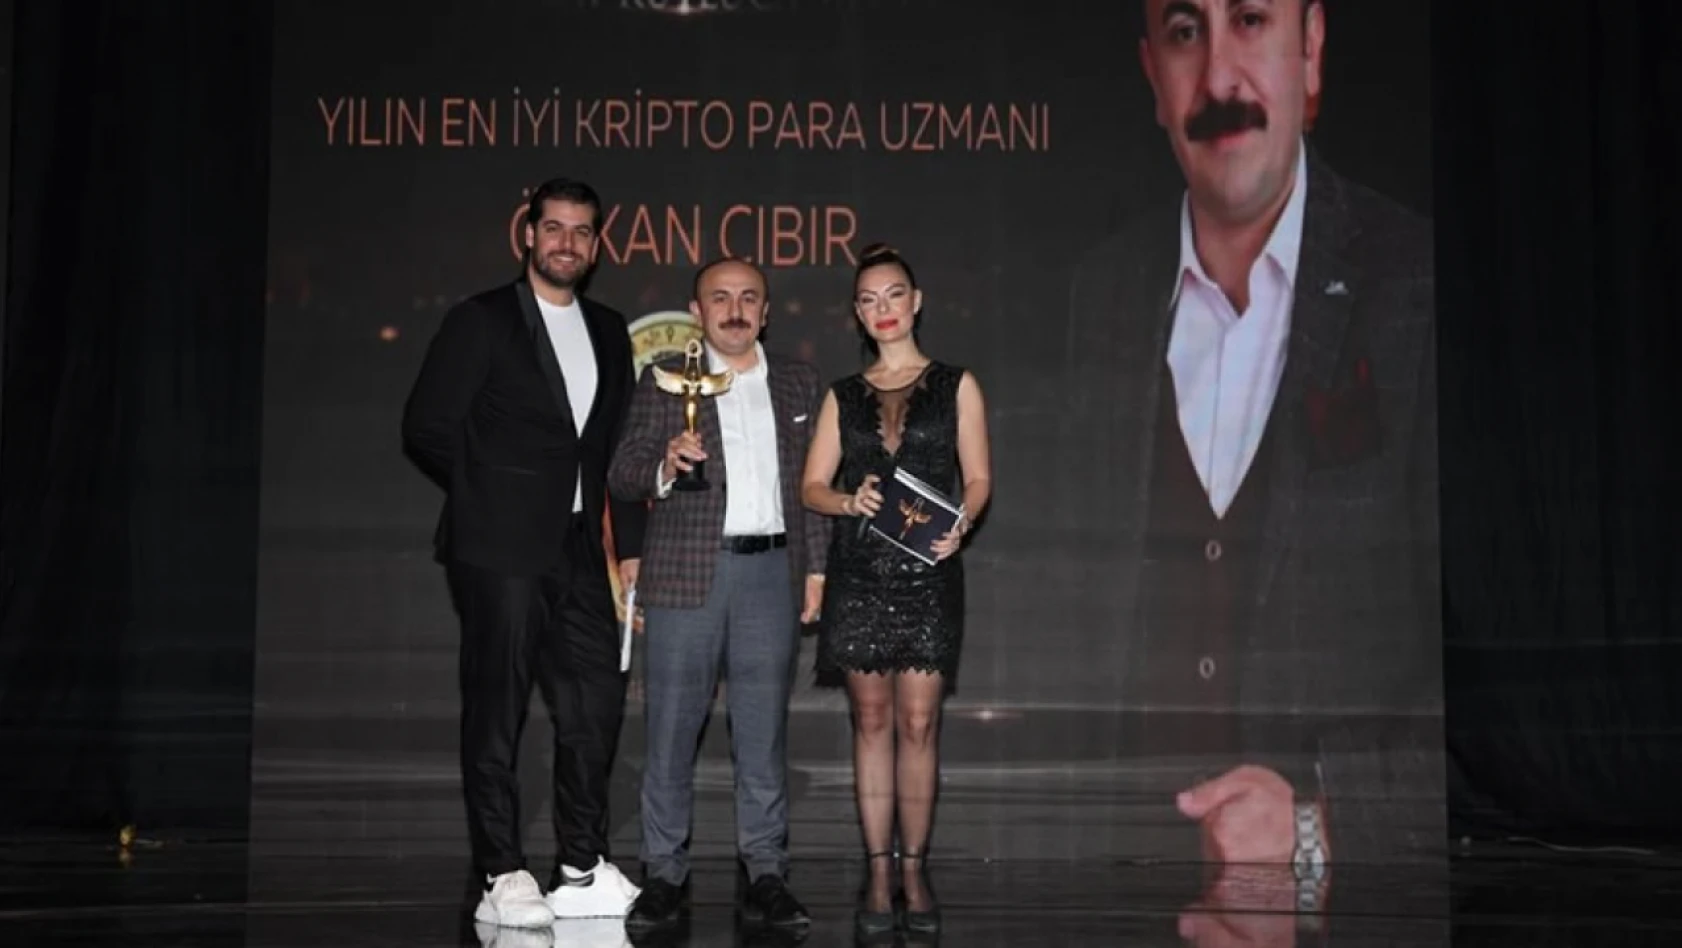 Özkan Cıbır, 'Yılın En İyi Kripto Para Uzmanı' seçildi